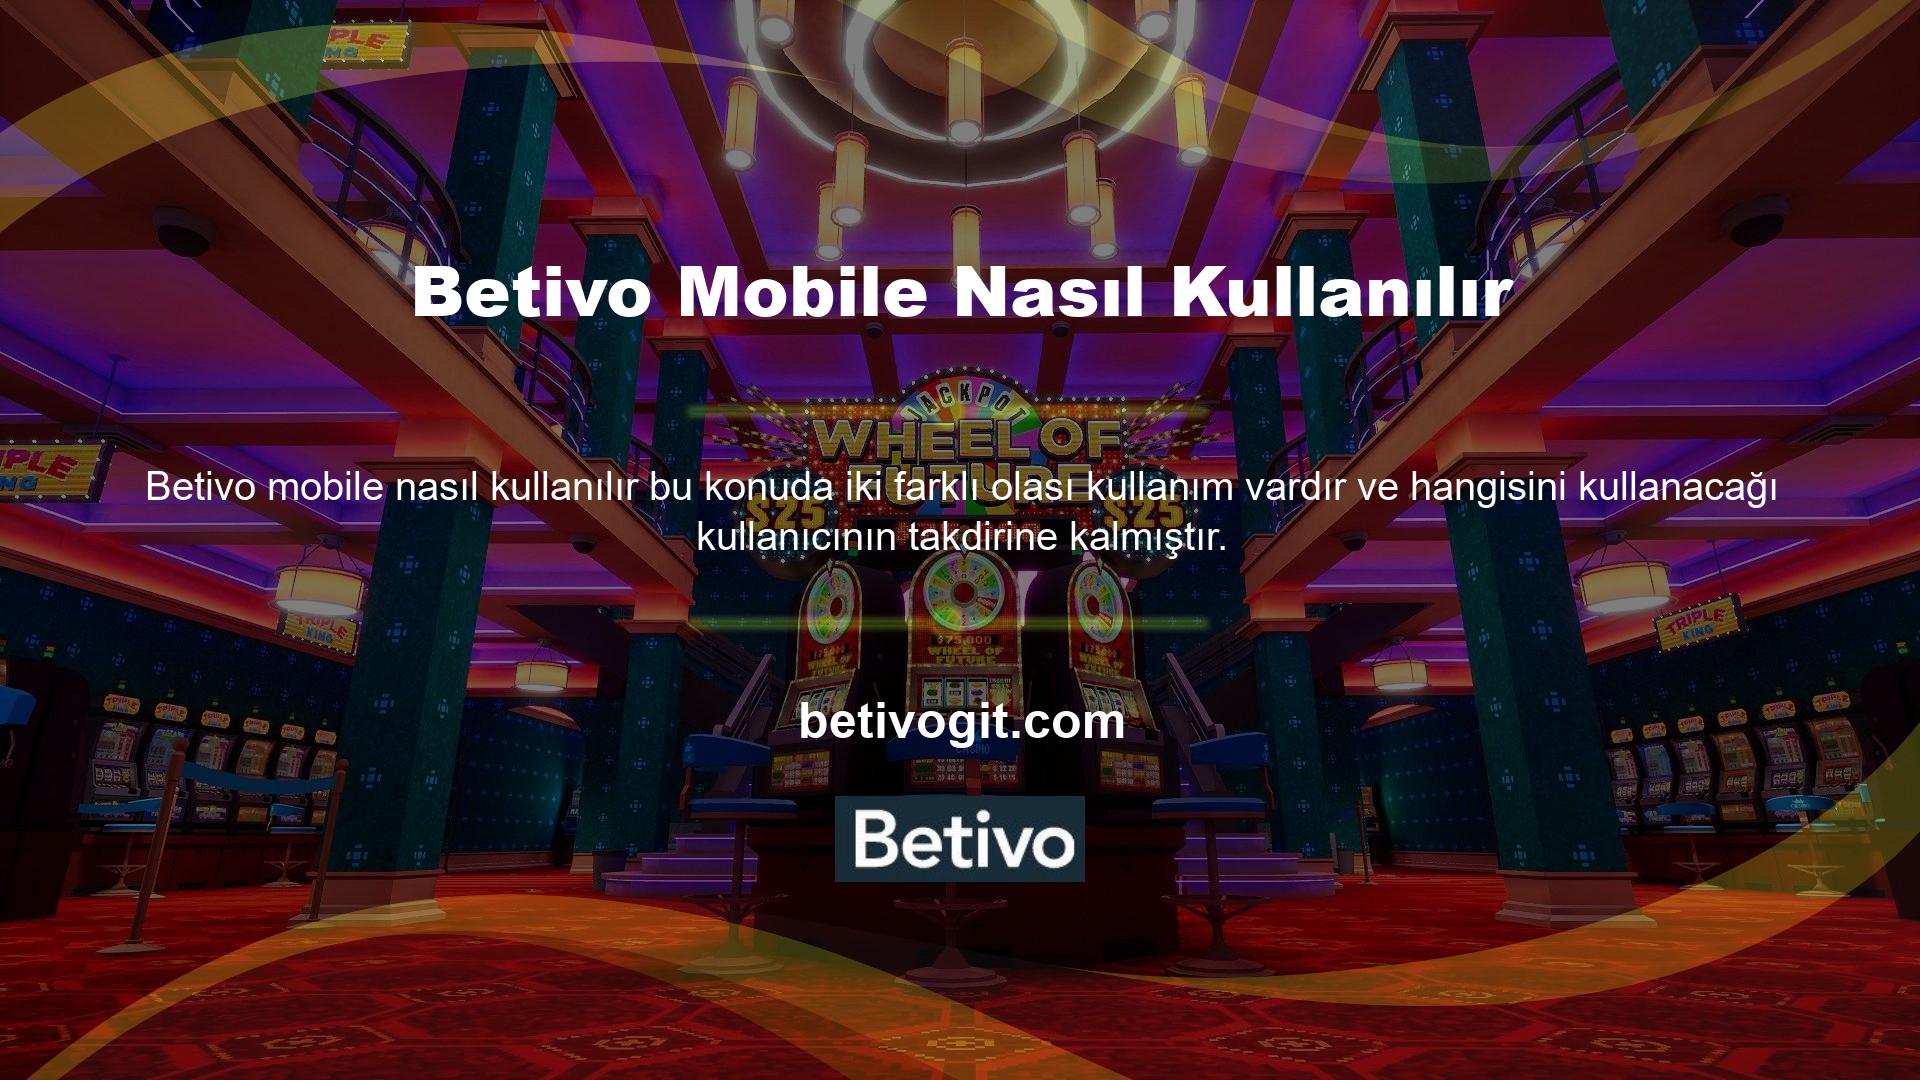 Betivo ile mobil hizmetlerden yararlanmak istiyorsanız yeni Betivo giriş adresi size öncelikle yardımcı olacaktır